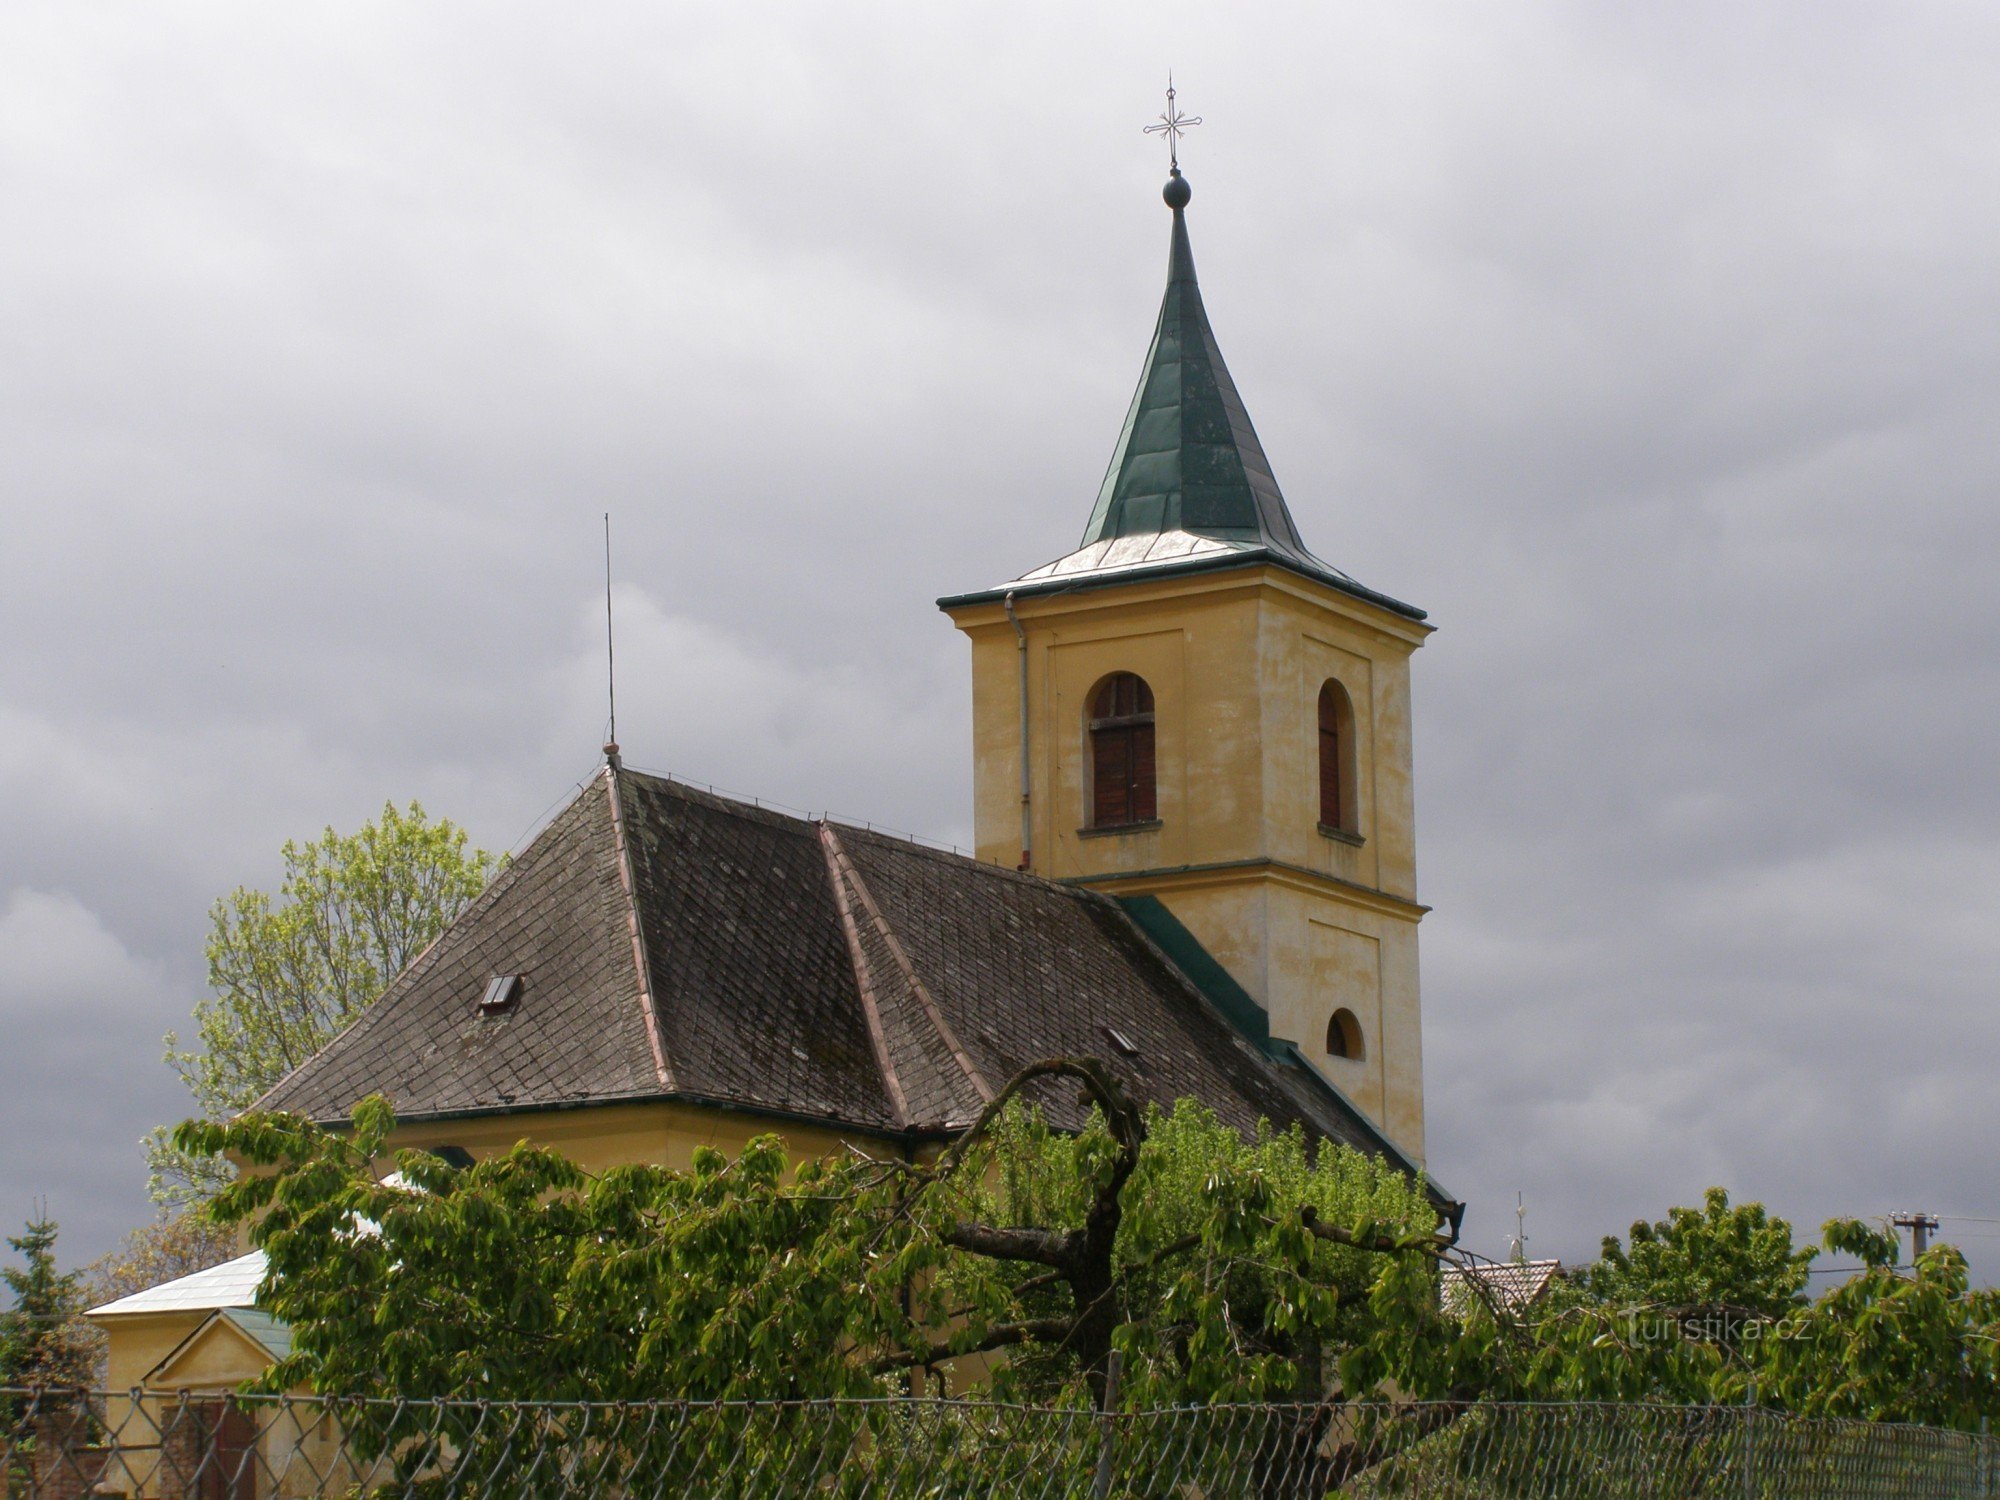 Boharyné - nhà thờ St. Bartholomew